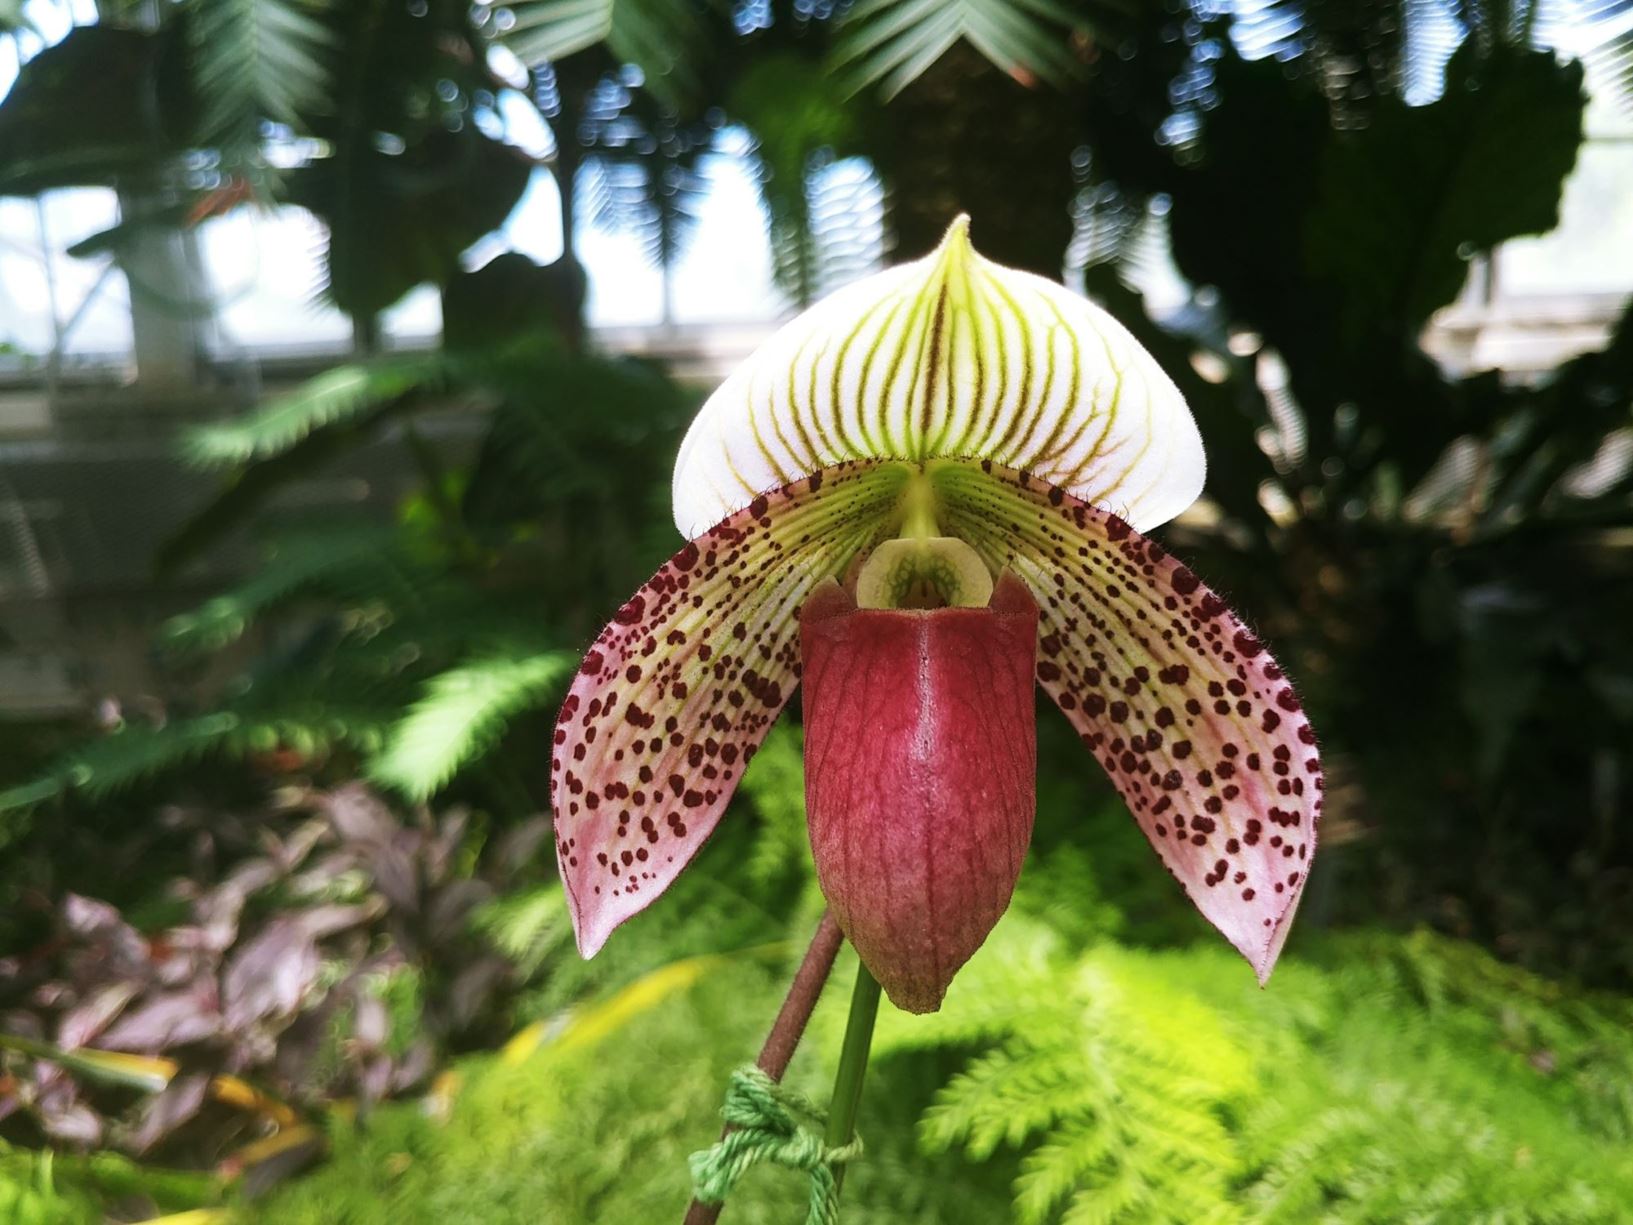 Paphiopedilum Montera Vogue - slipper orchid